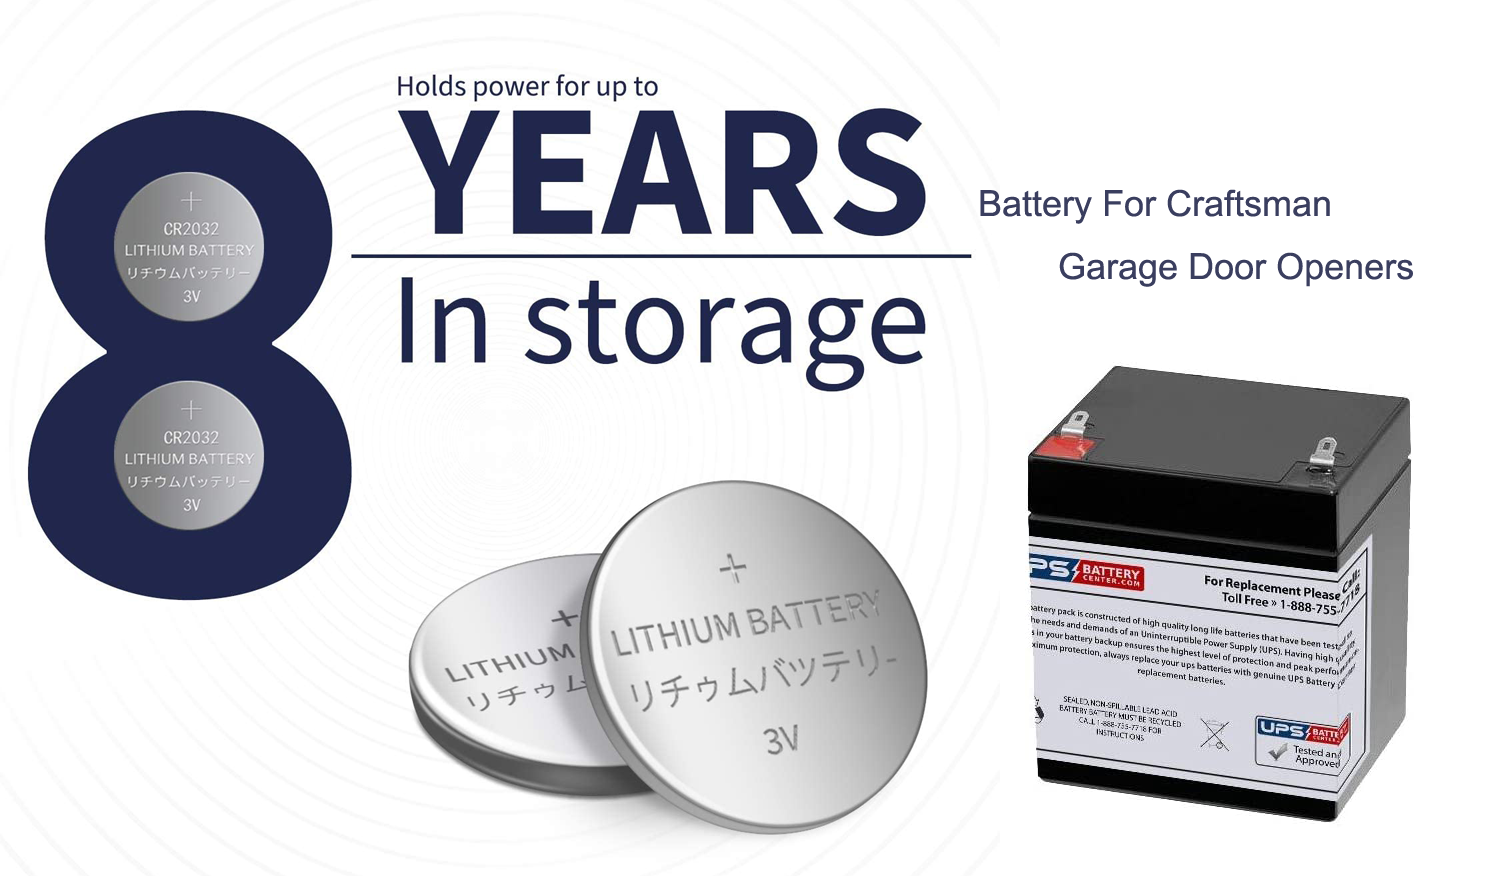 Buying a Good Battery for Craftsman Garage Door Openers